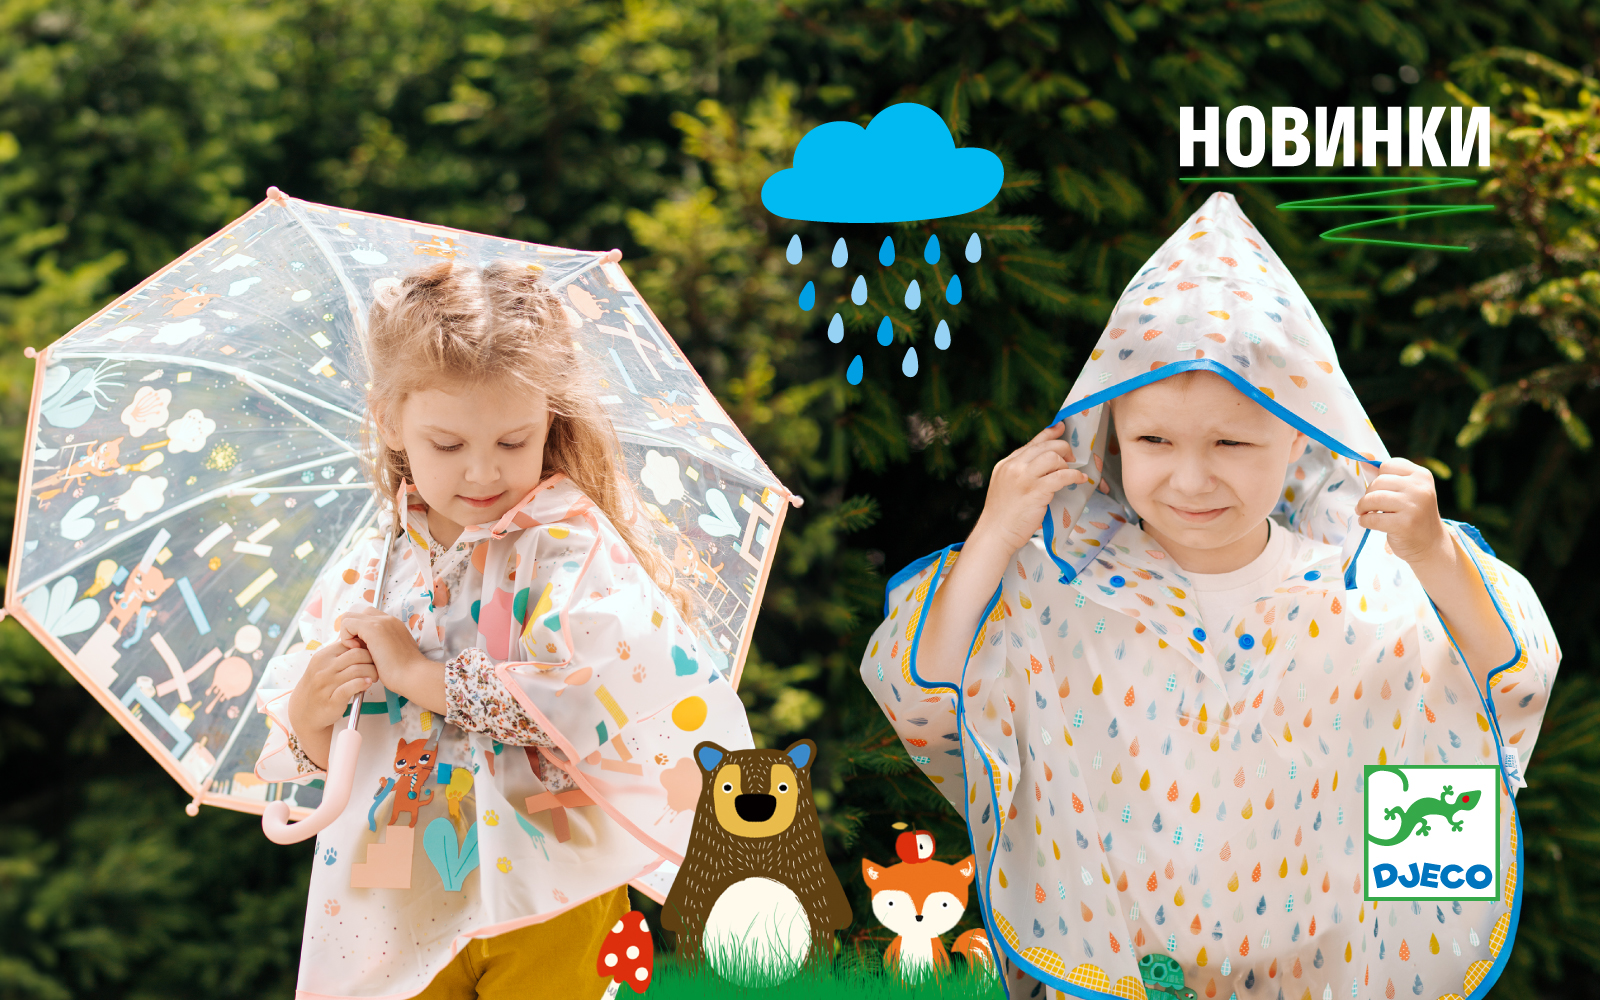 Djeco: Нова колекція парасольок та дощовиків &#8211; Створені для краси й захисту